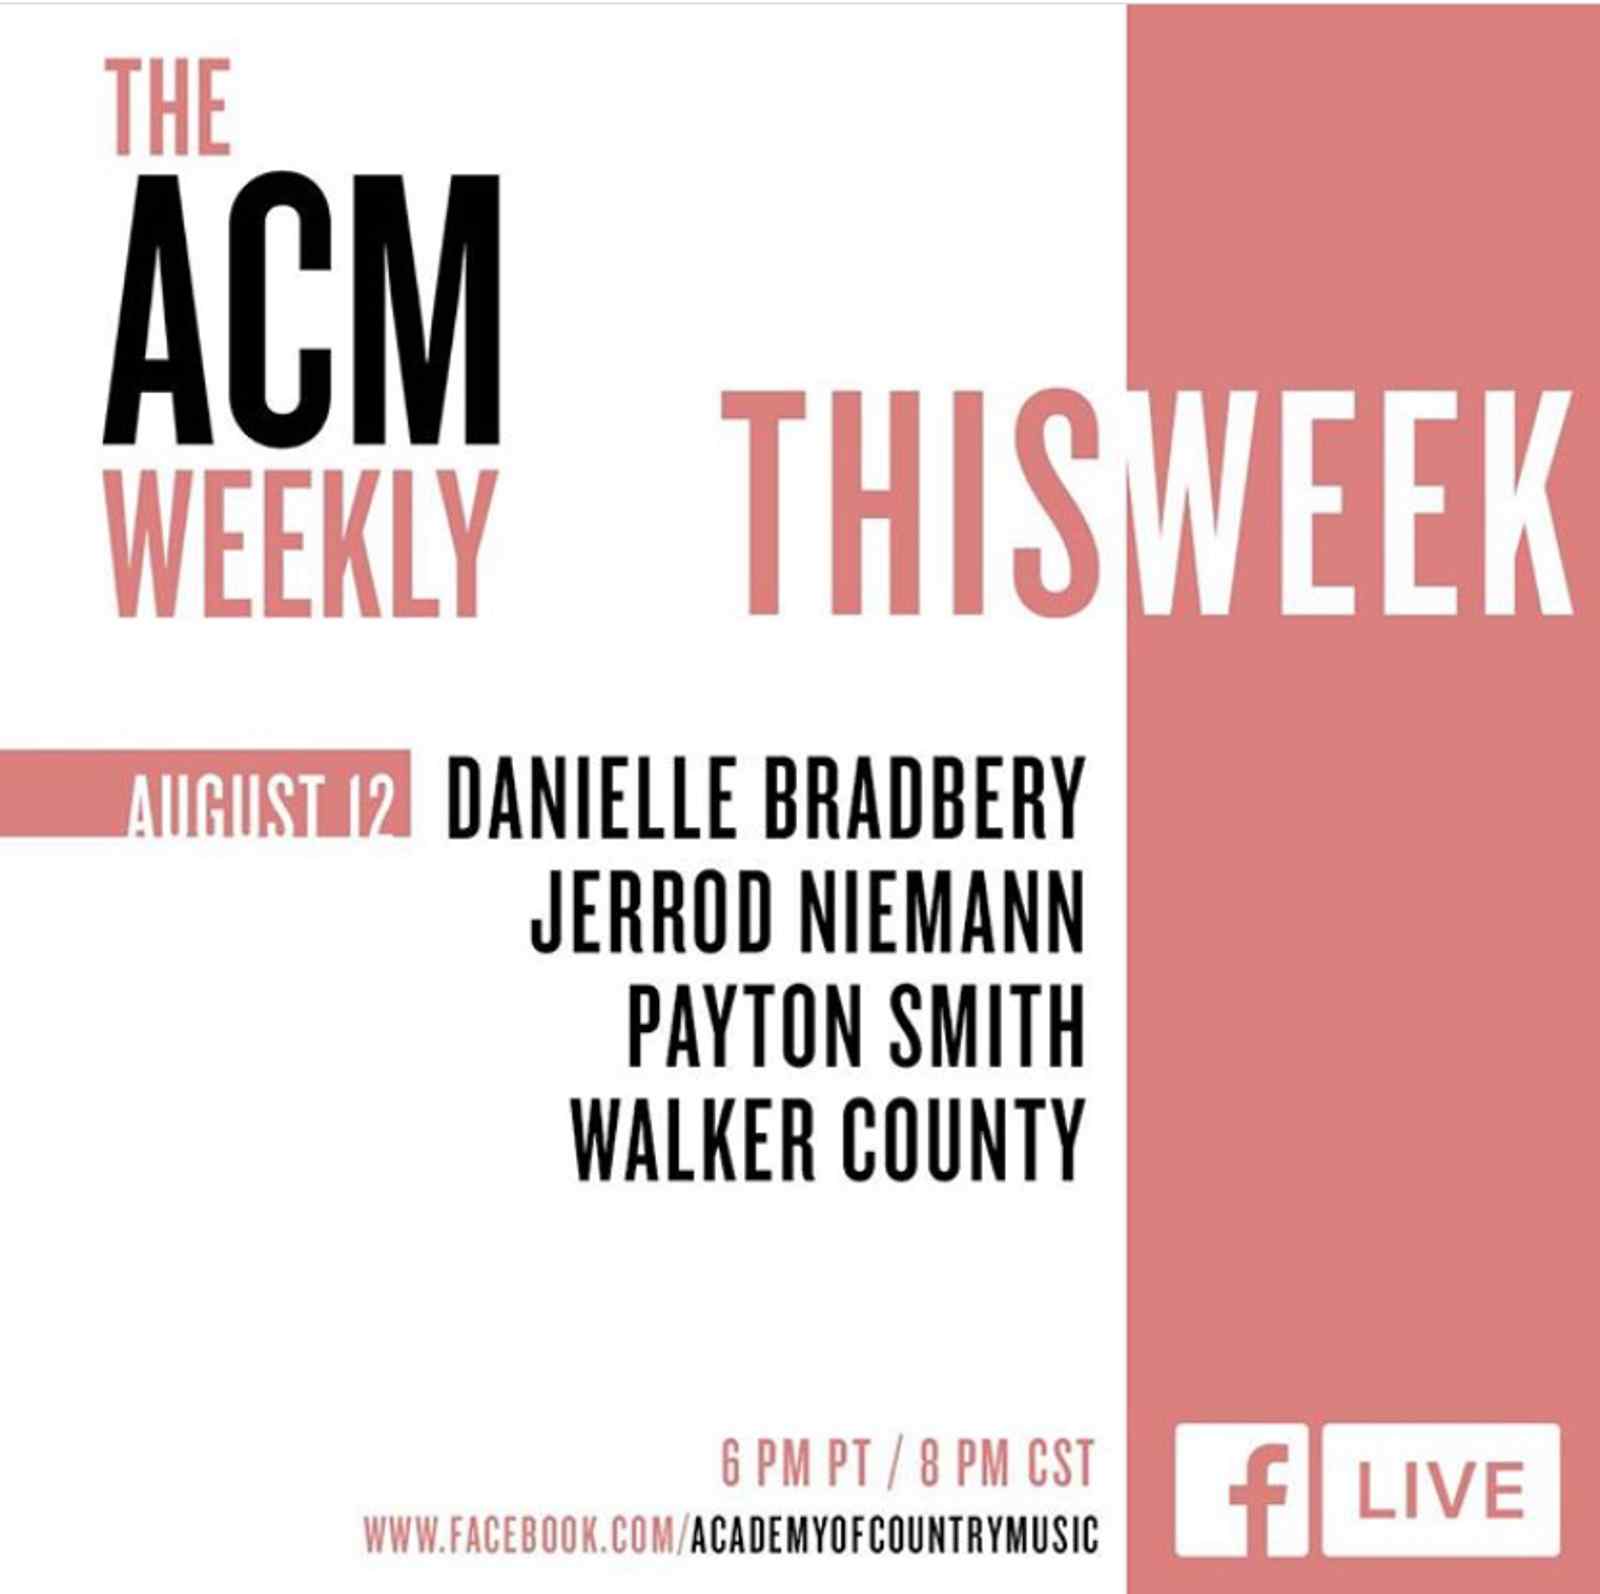 The ACM Weekly: Danielle Bradbery, Jerrod Niemann, Payton Smith and Walker County